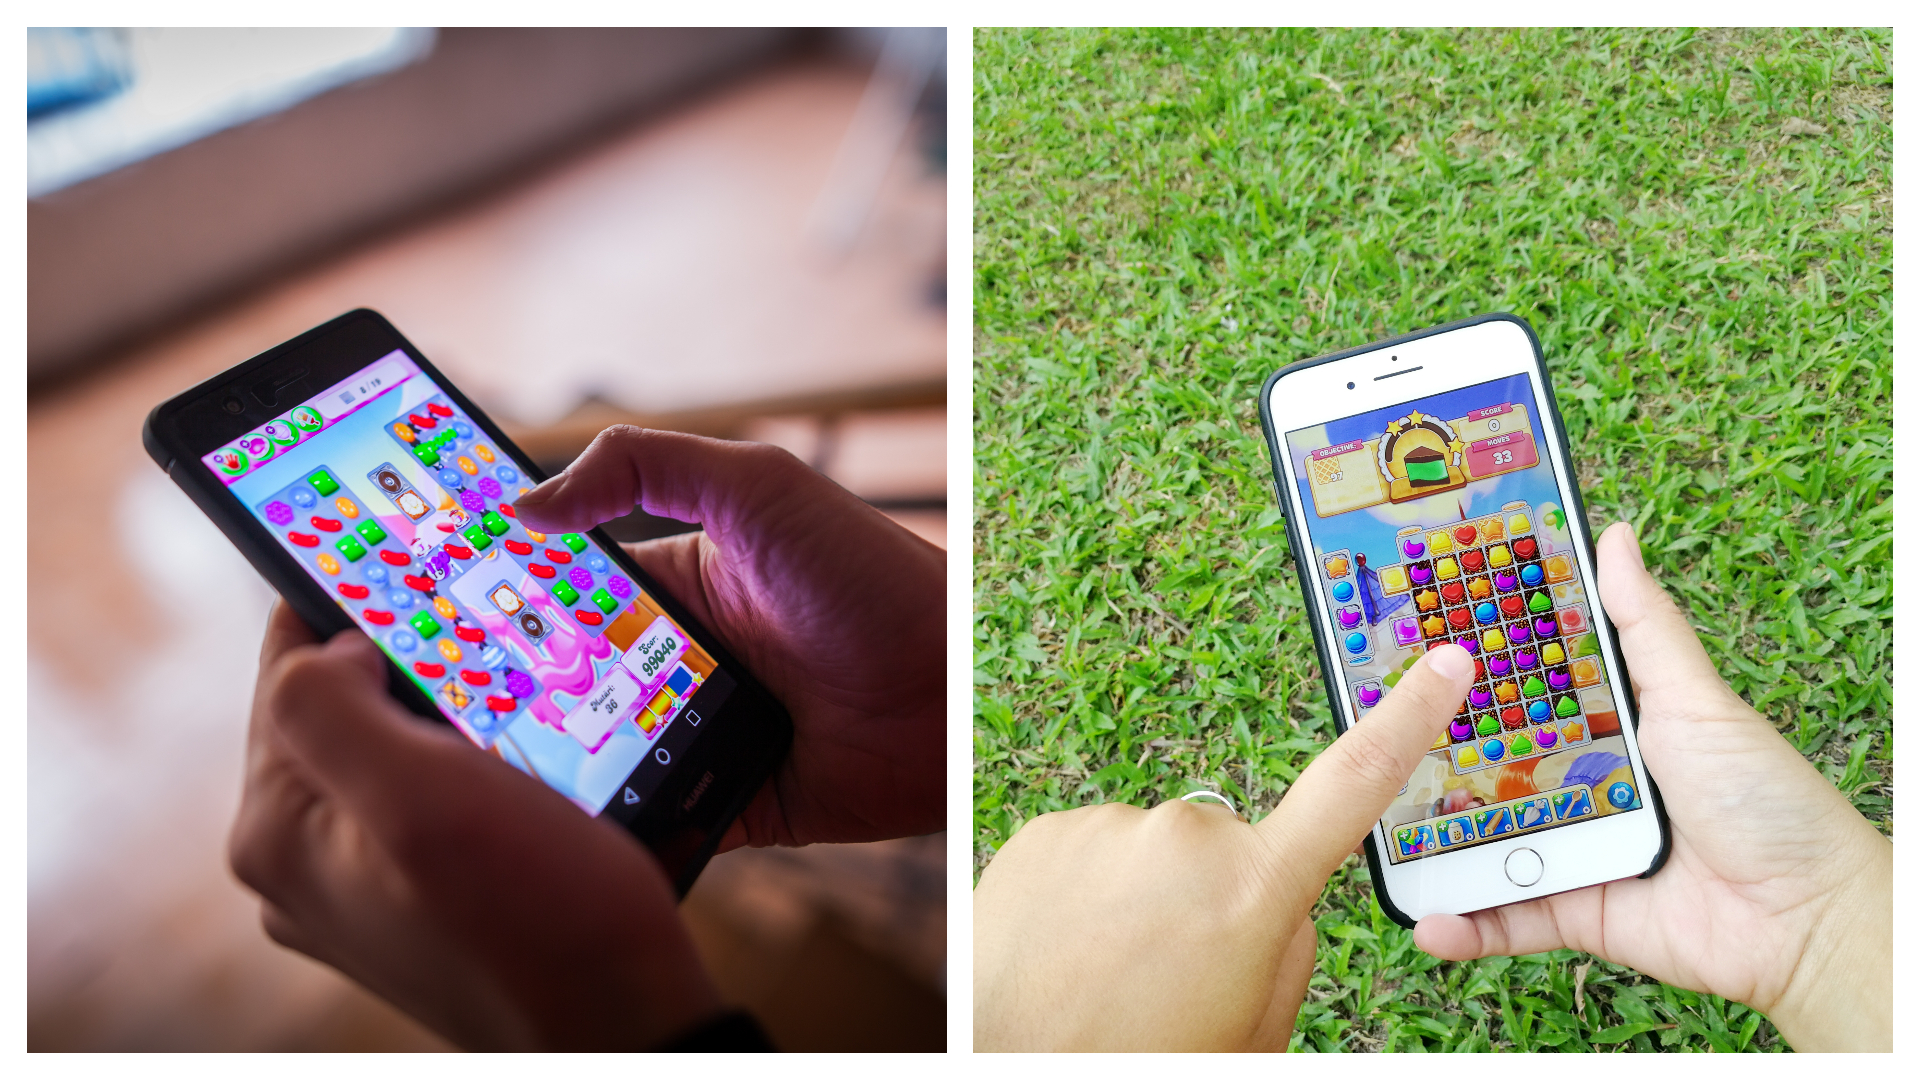 Imagens mostram dois celulares jogando Candy Crish Saga, sendo um com o indicador e outro com o polegar